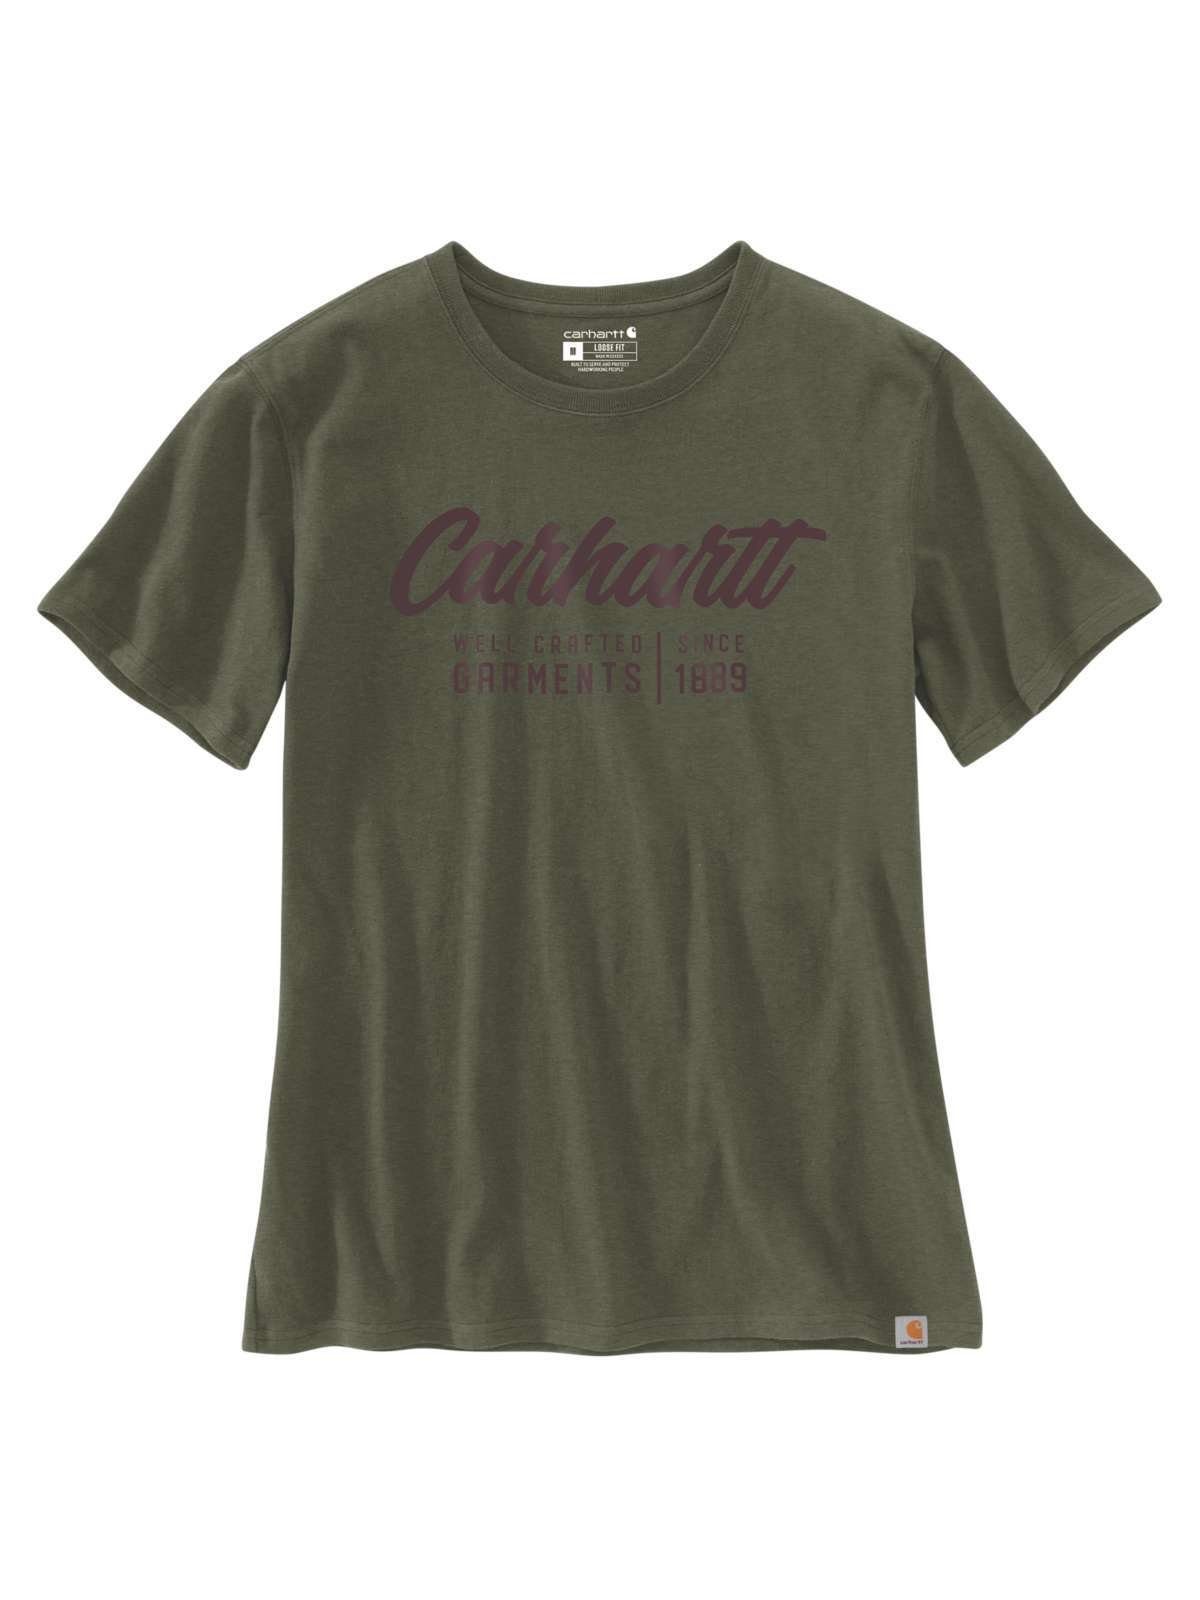 basil Carhartt T-Shirt heather T-shirt Graphic Carhartt